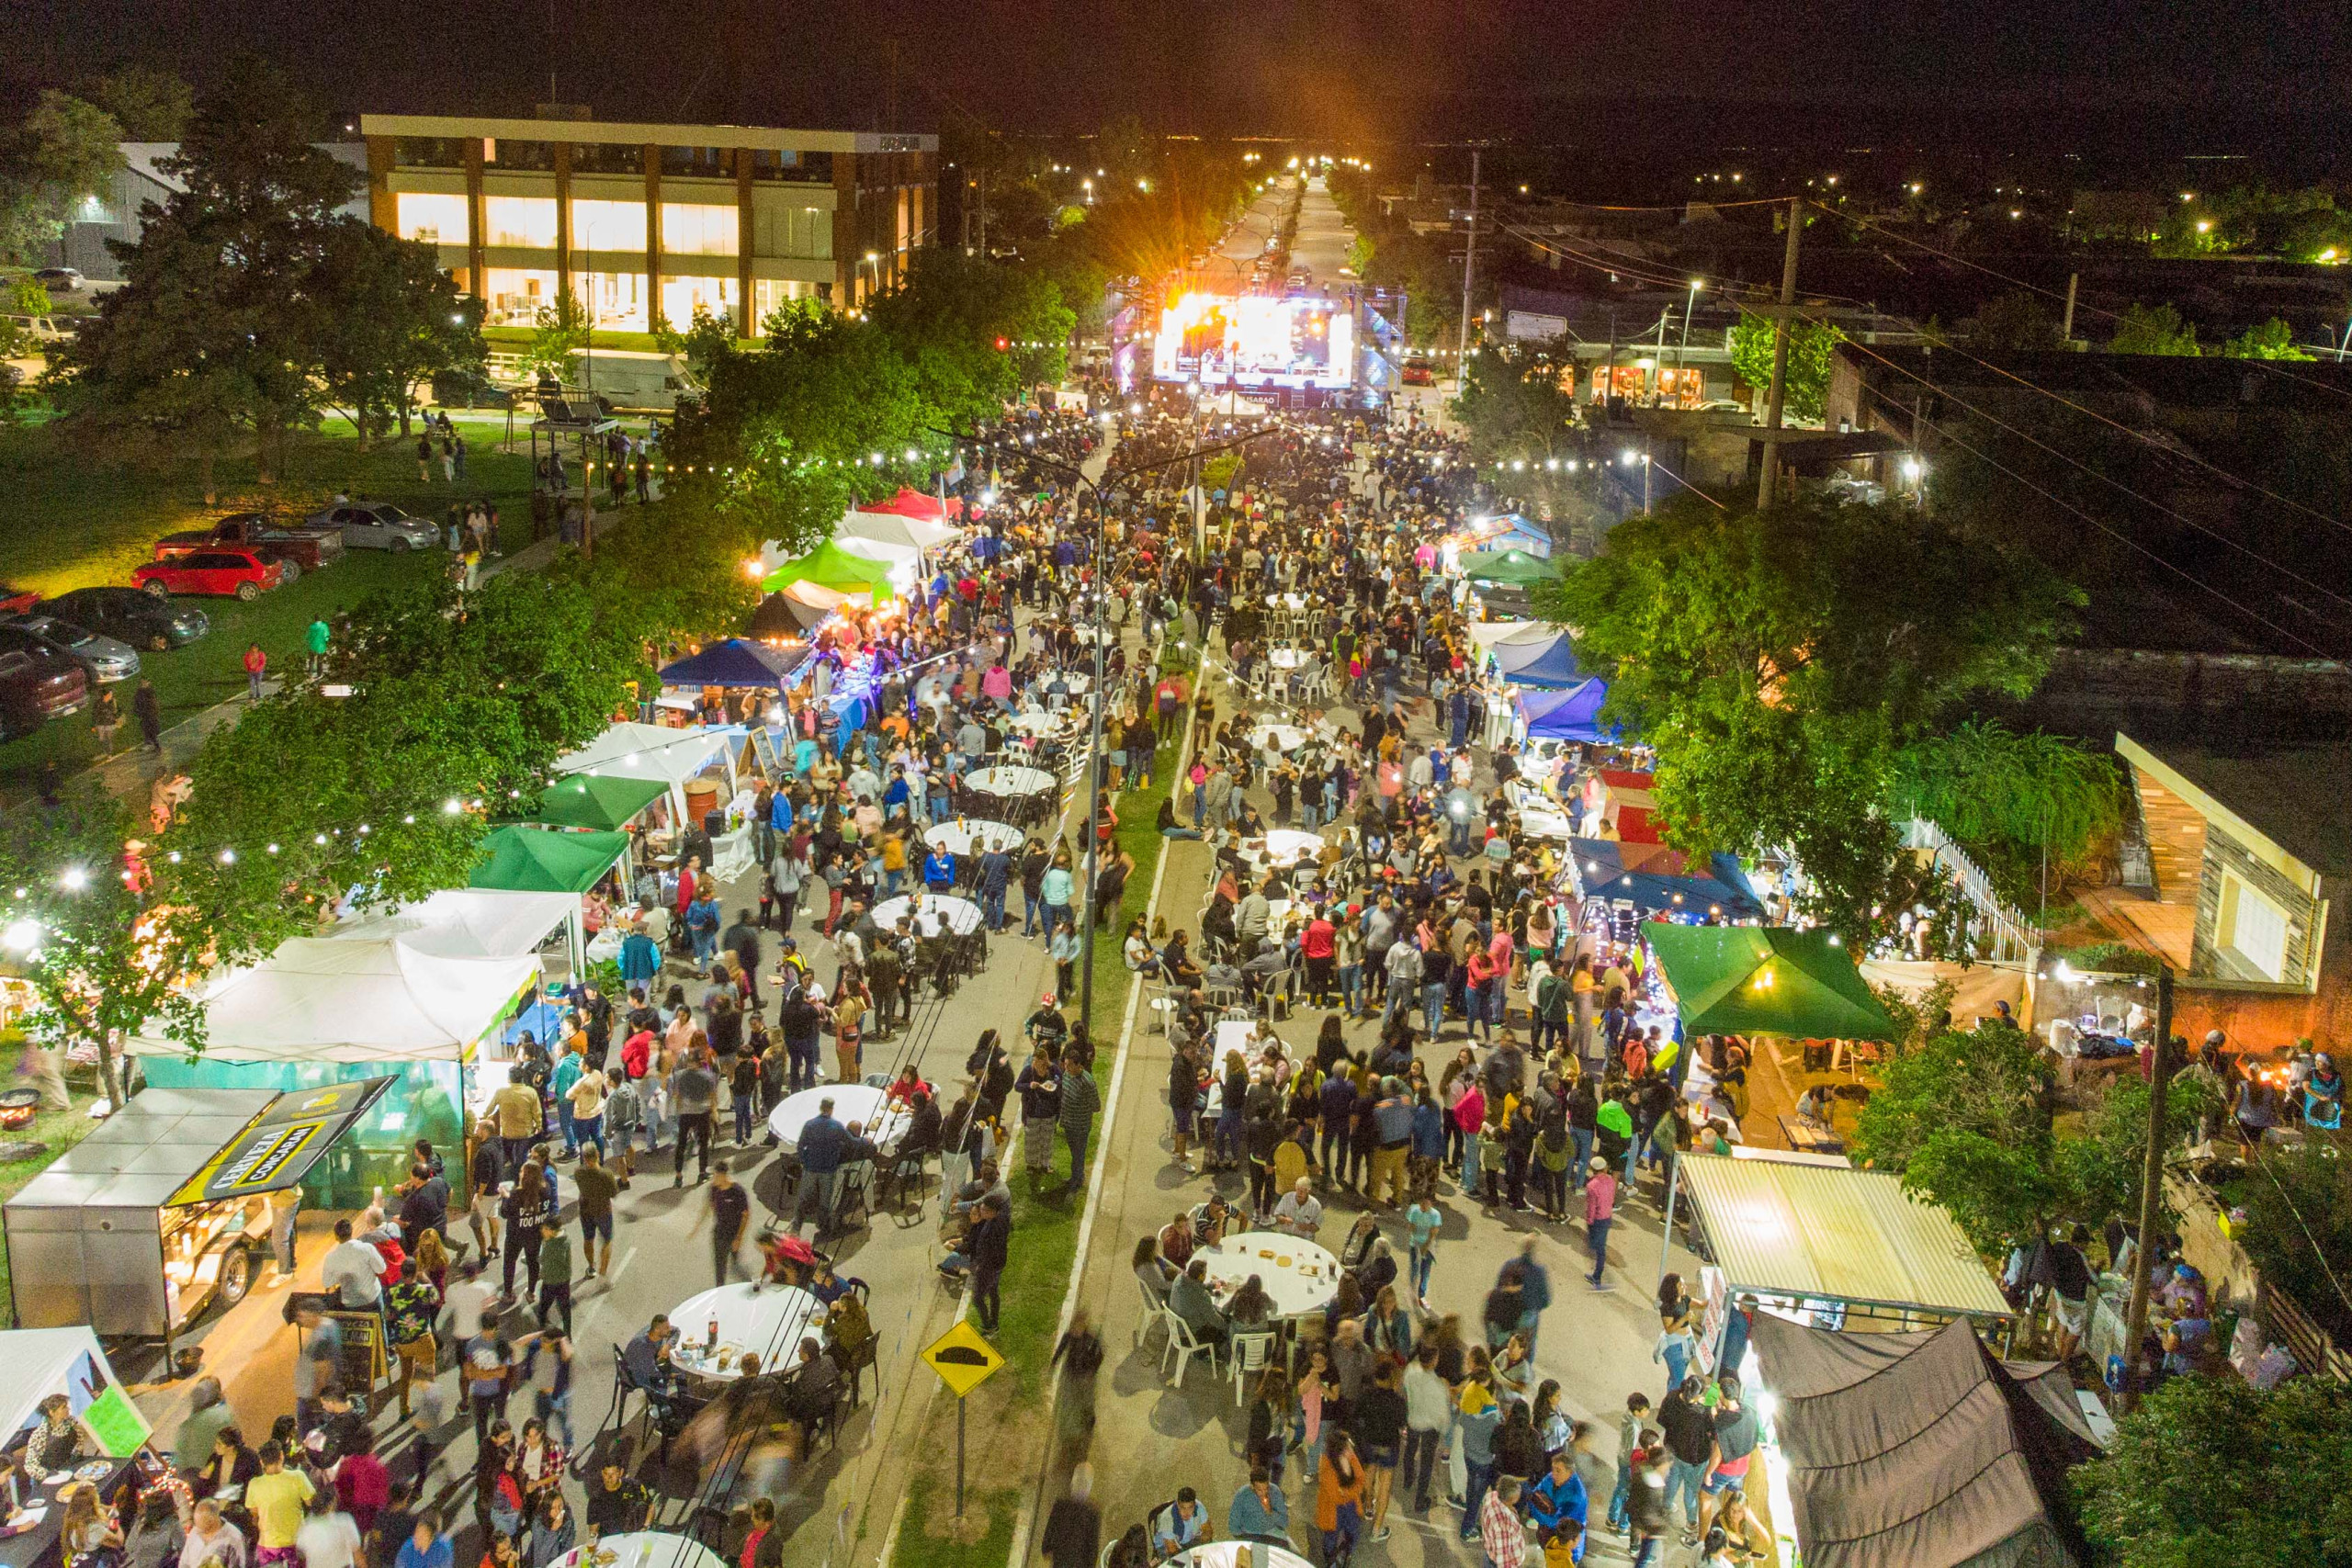 “Los festivales significan un abanico de oportunidades para el crecimiento de instituciones y vecinos”